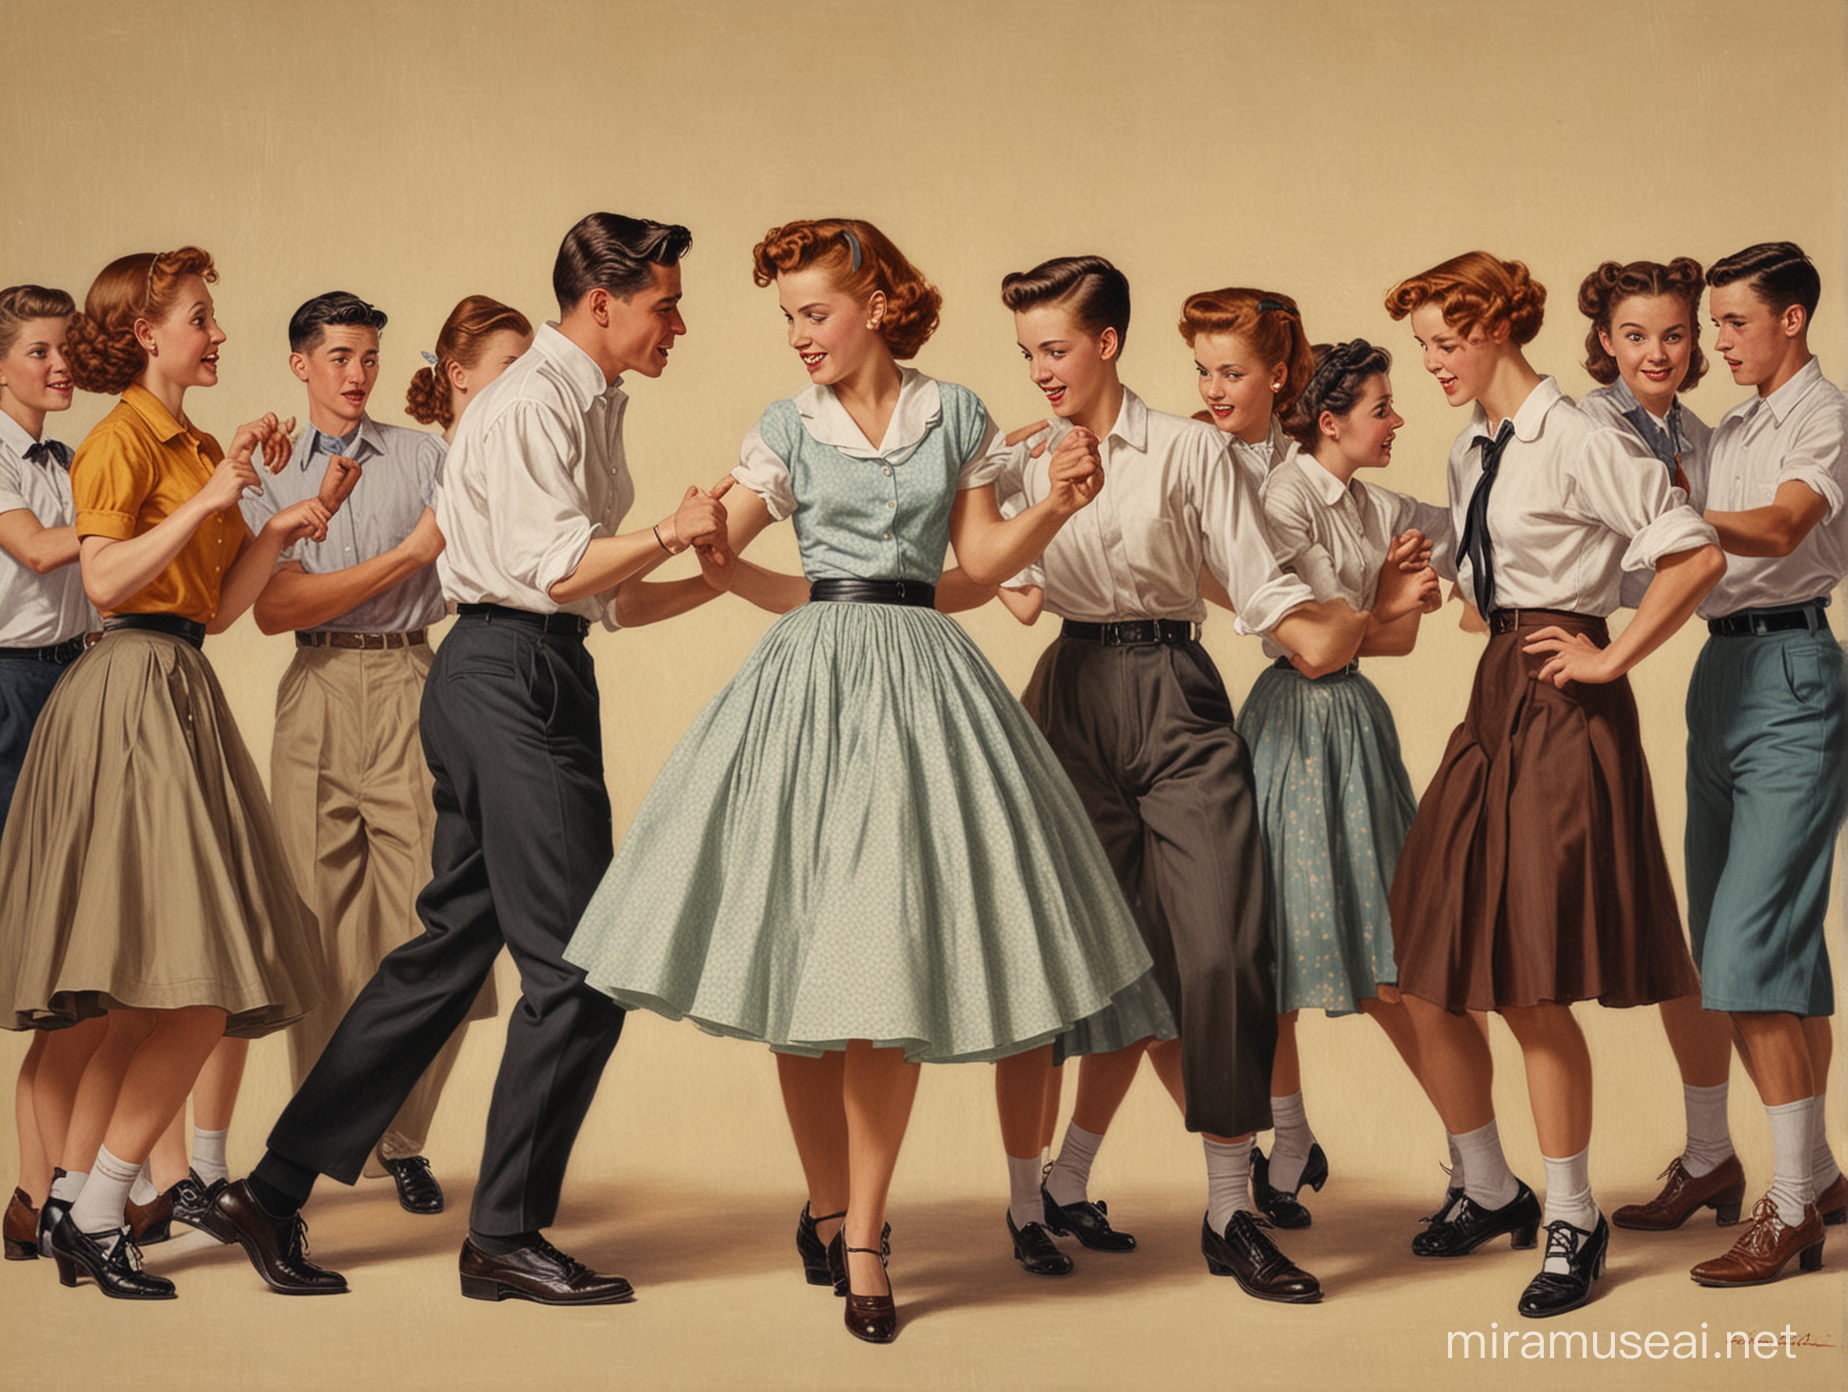 1950s Teenagers Enjoying Rockwellian Dance Scene